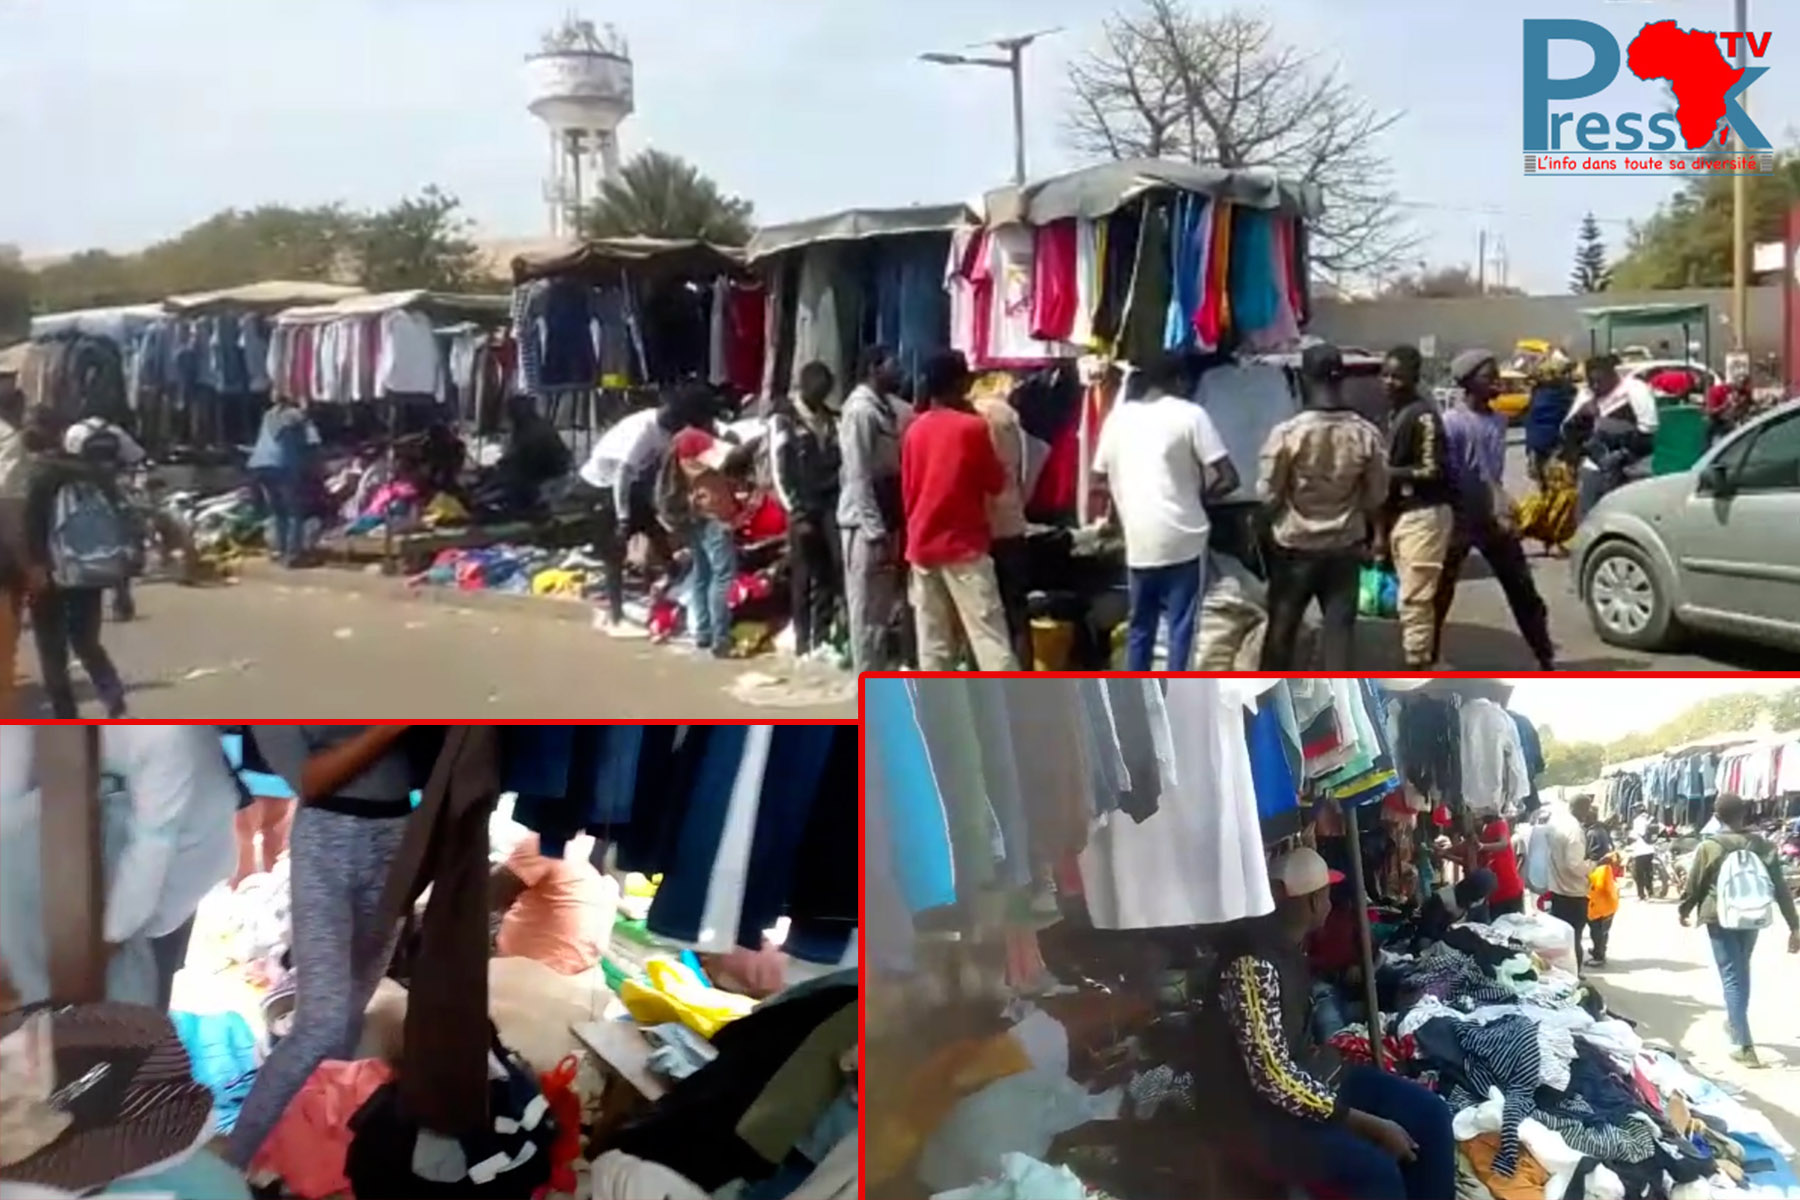 Vente de friperies à Dakar: le froid impose sa loi à Colobane... Jeans, pulls, costumes prennent le pouvoir